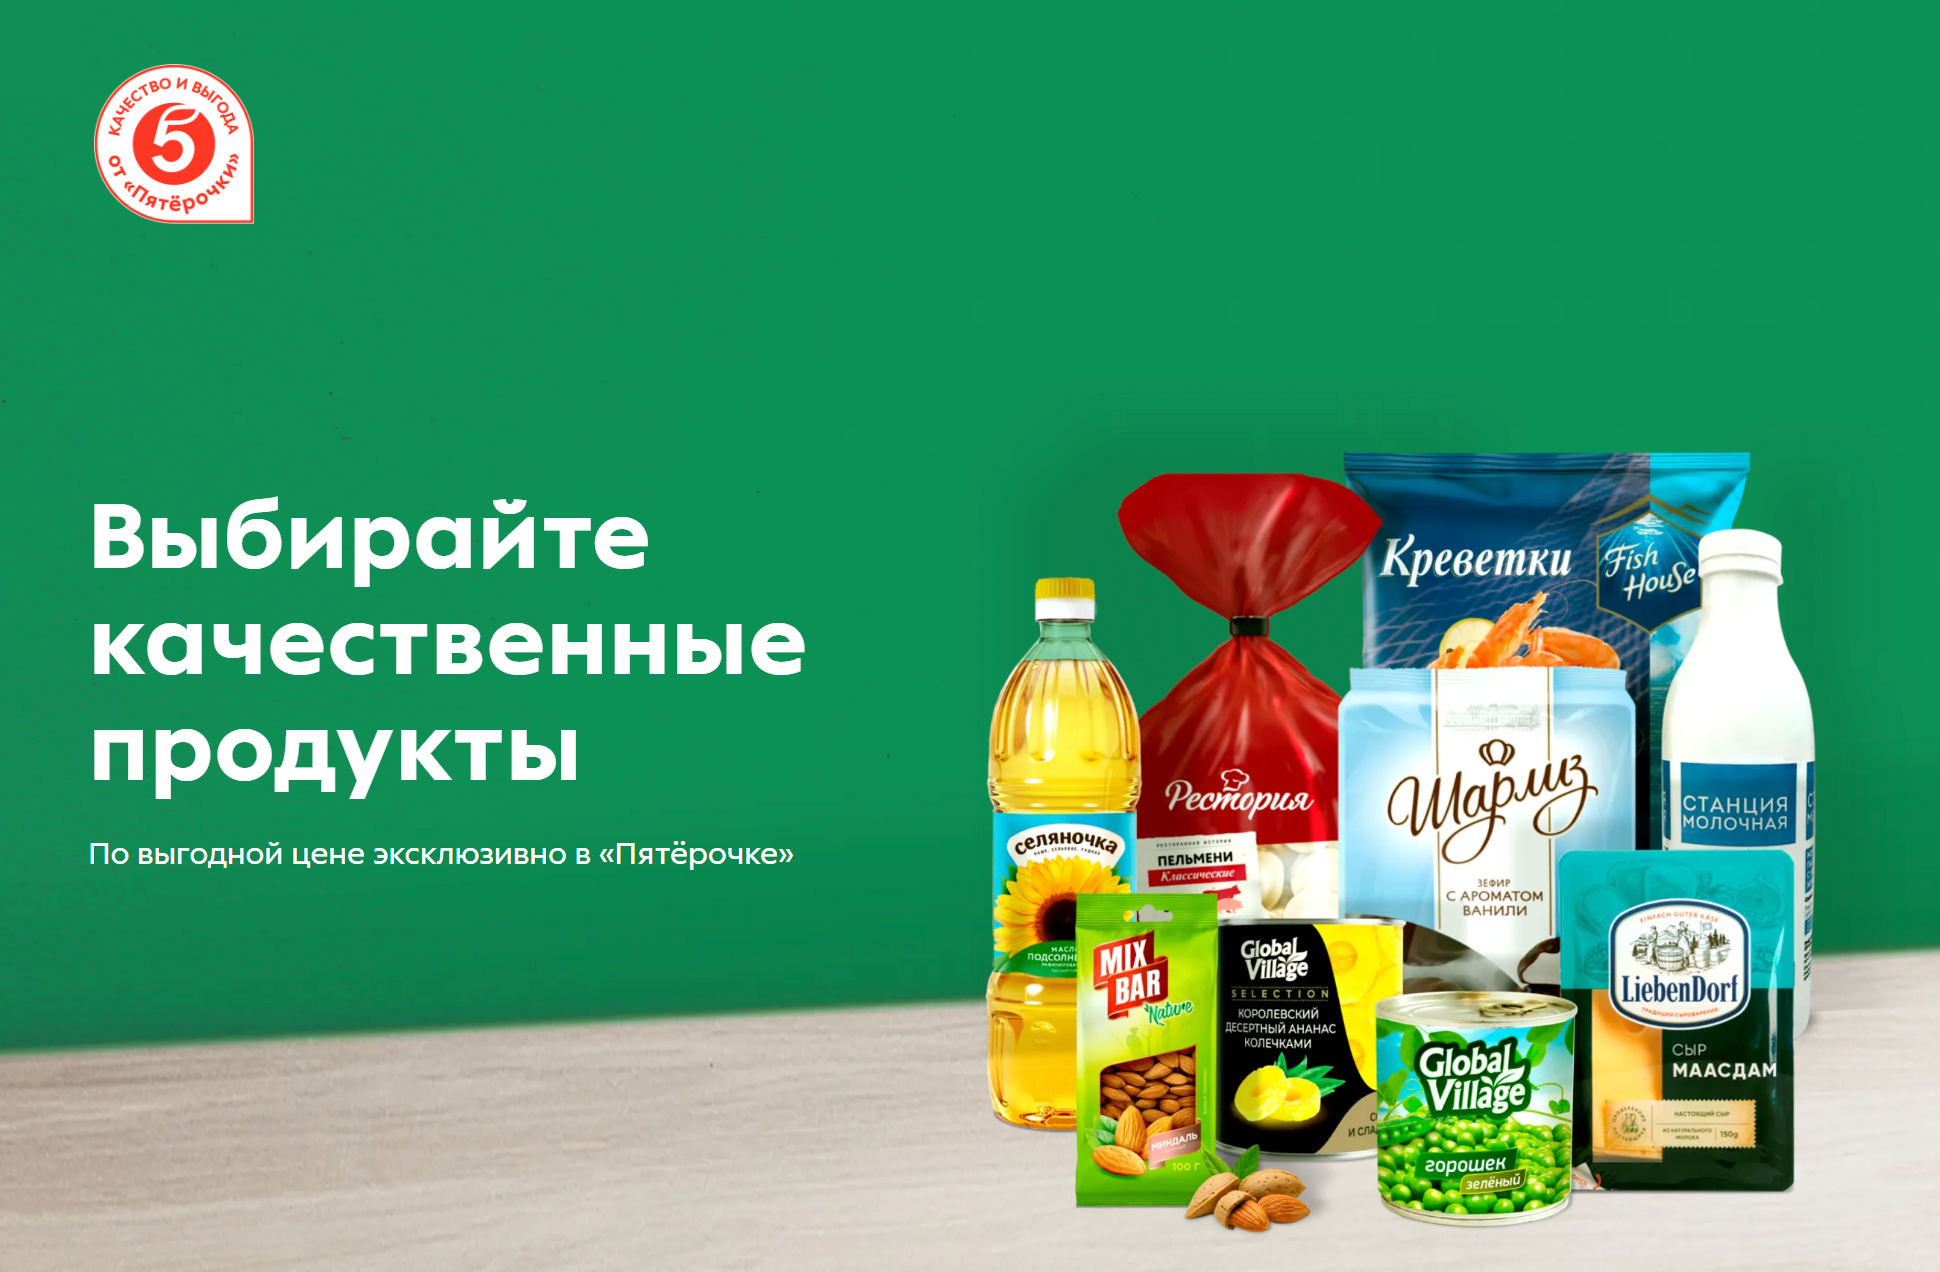 Собственные торговые марки «Пятерочки». Источник: brands.5ka.ru